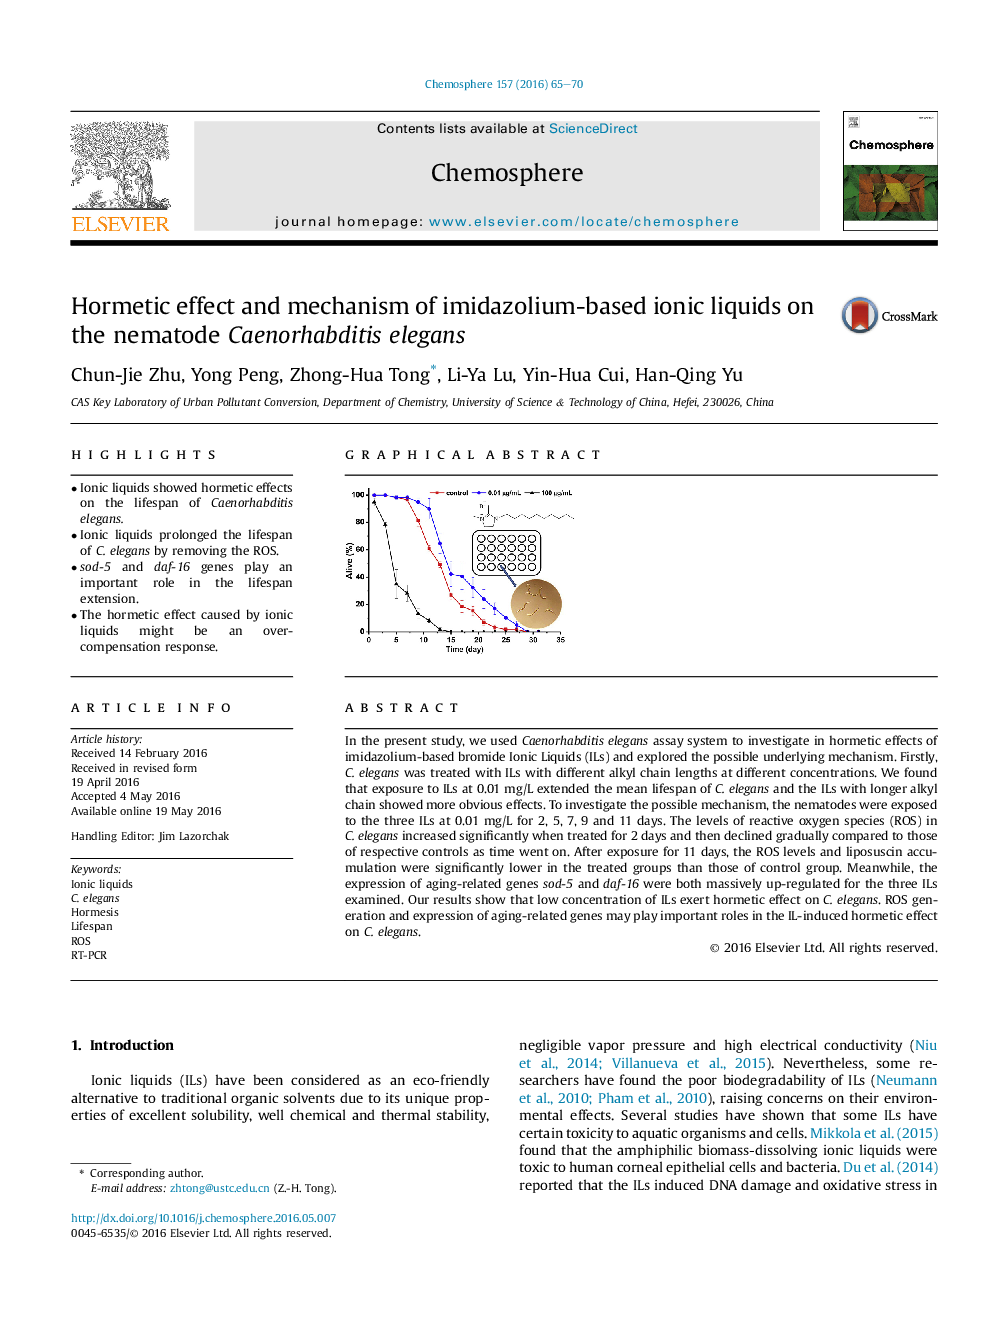 Hormetic effect and mechanism of imidazolium-based ionic liquids on the nematode Caenorhabditis elegans